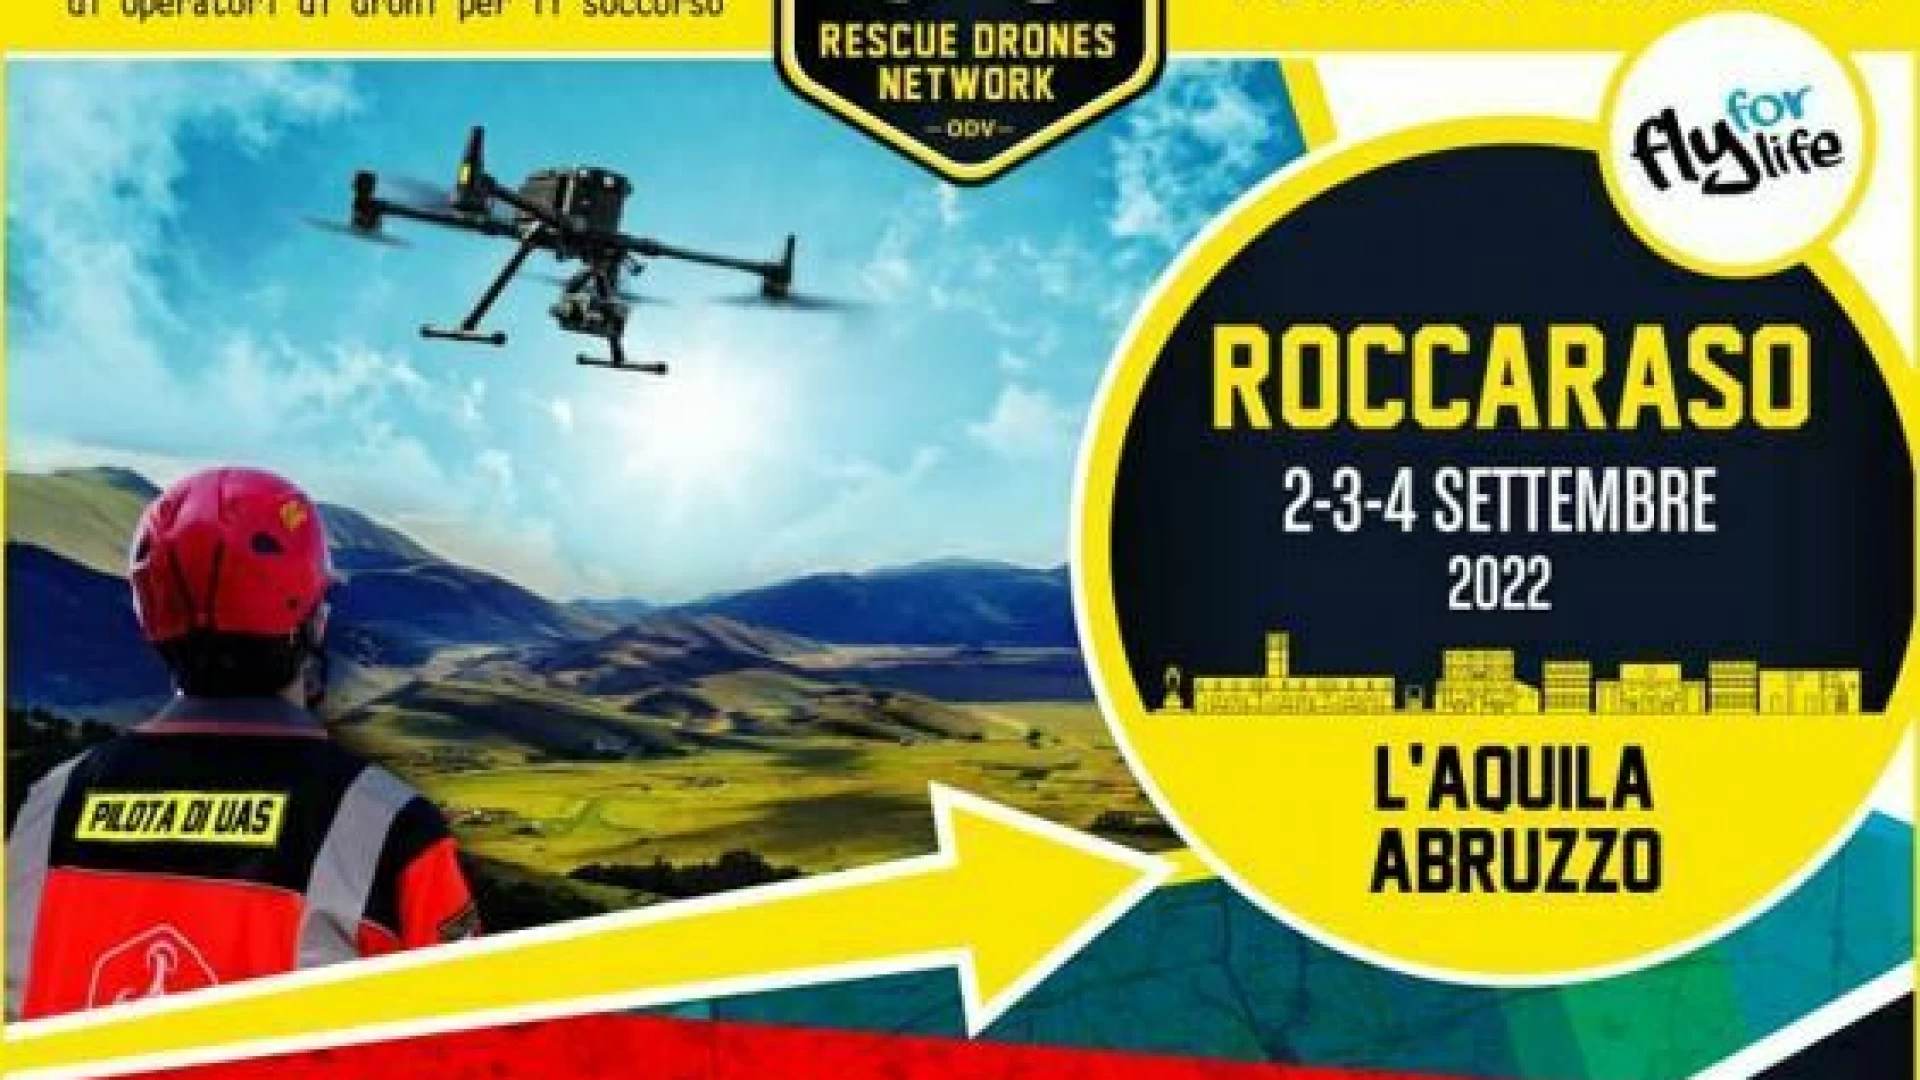 Roccaraso: soccorso con il supporto di Droni. Dal 2 al 4 settembre esercitazione nazionale sul territorio. Presenti diverse associazioni operanti in Alto Sangro.